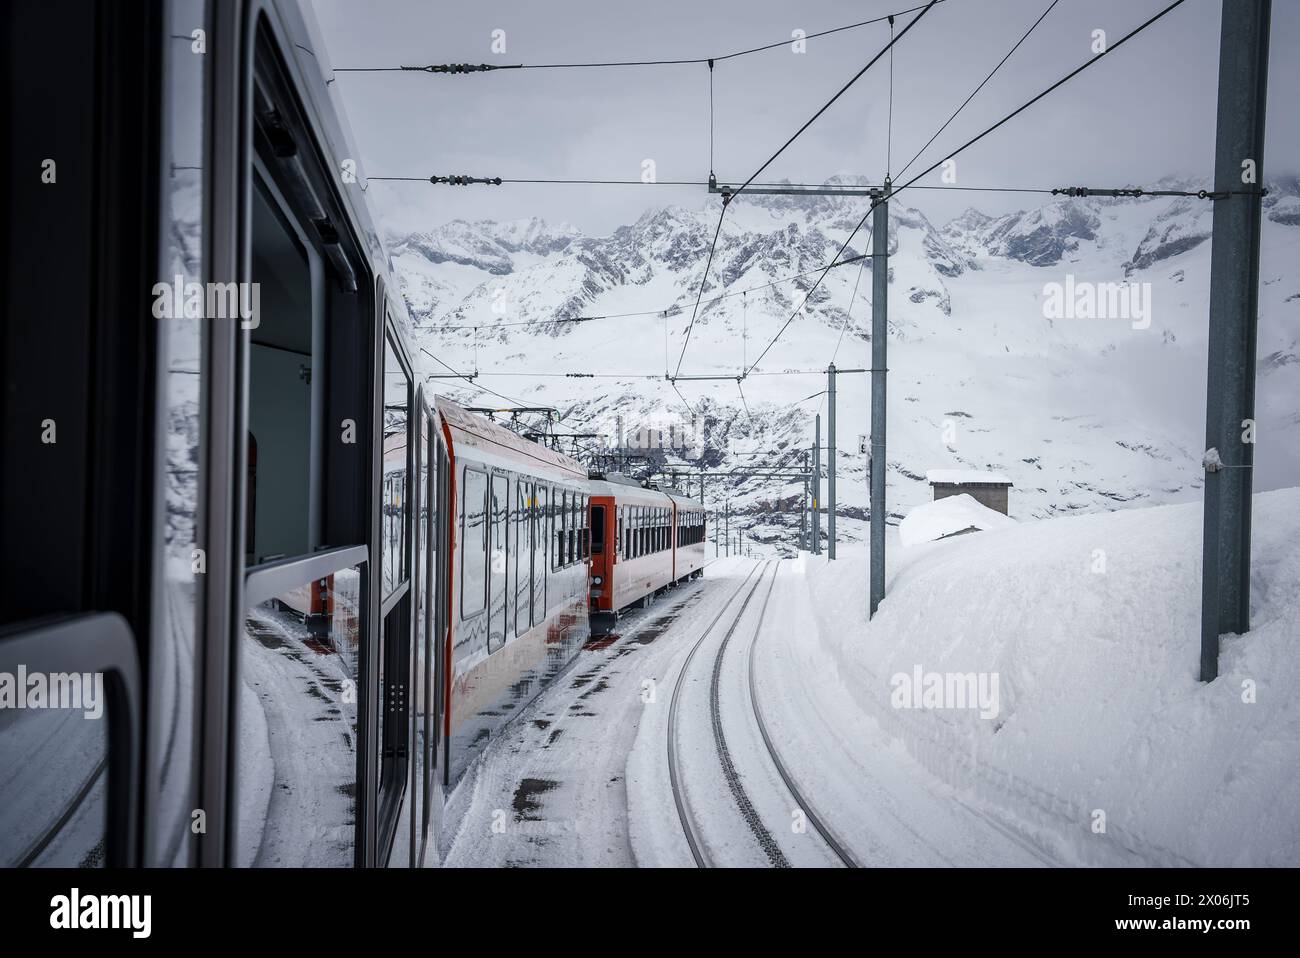 Winter journey through Zermatt ski resort on Swiss railway. Stock Photo